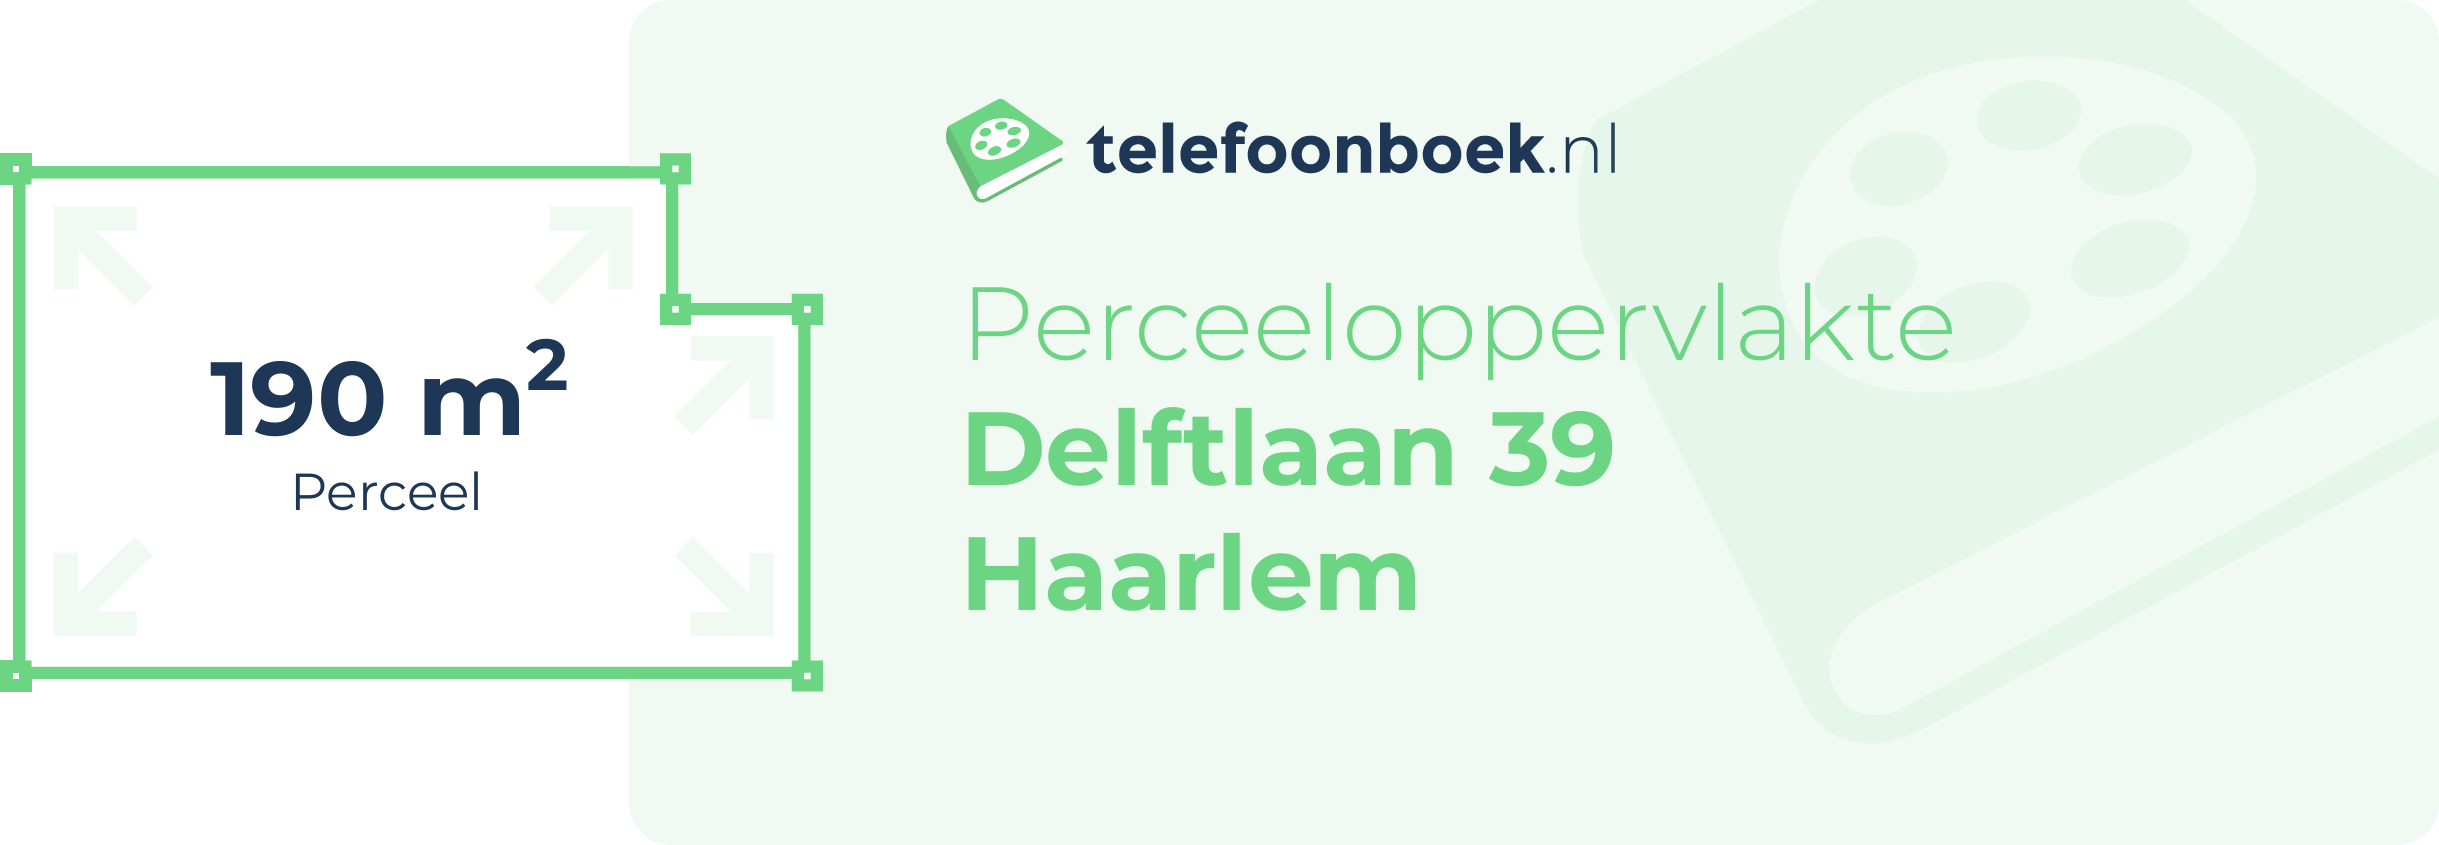 Perceeloppervlakte Delftlaan 39 Haarlem